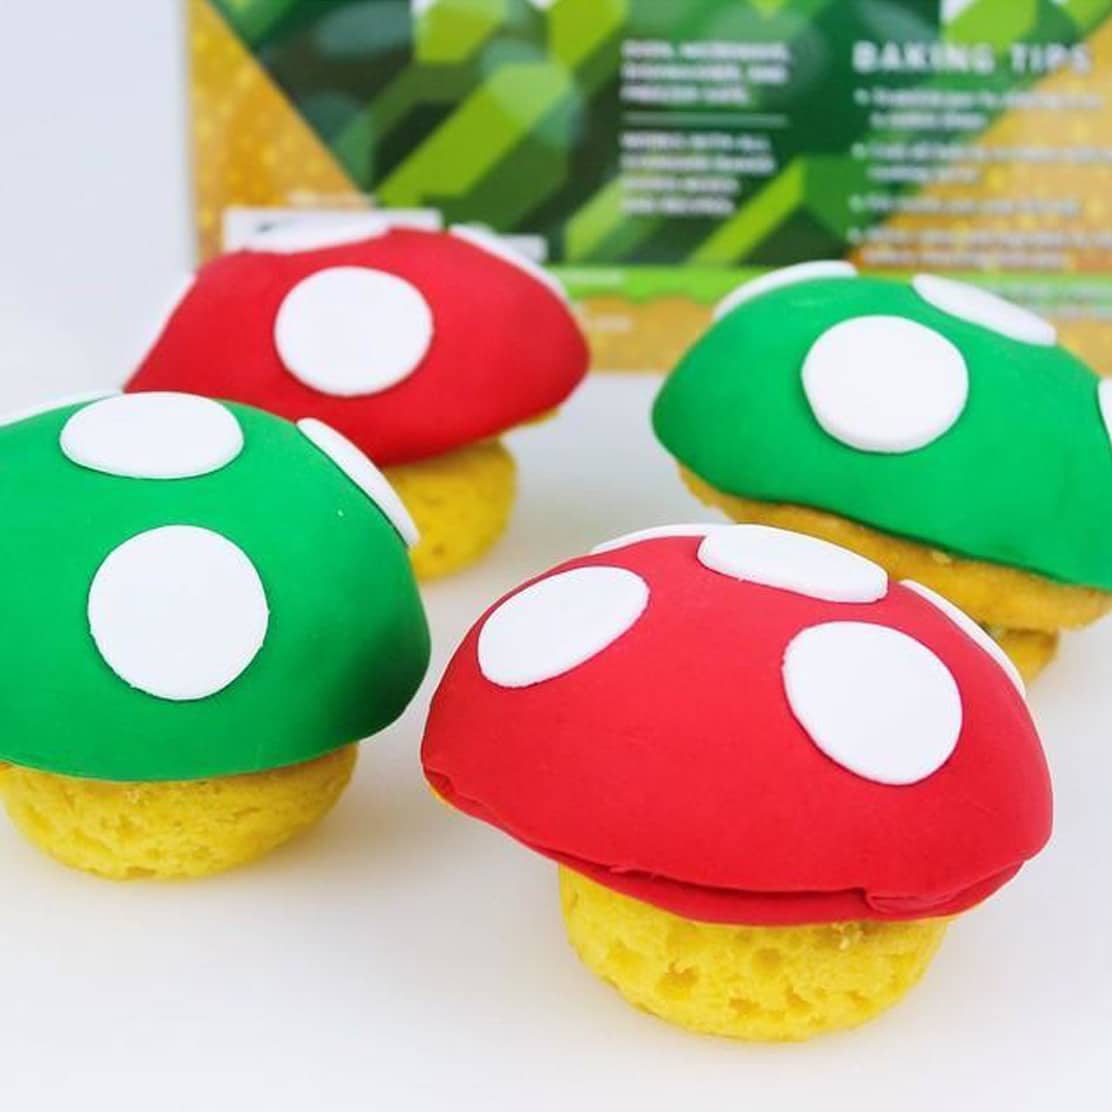 Super Mario 1-Up Mushroom Cupcake Pan Shut Up And Take My Yen : Anime & Gaming Merchandise